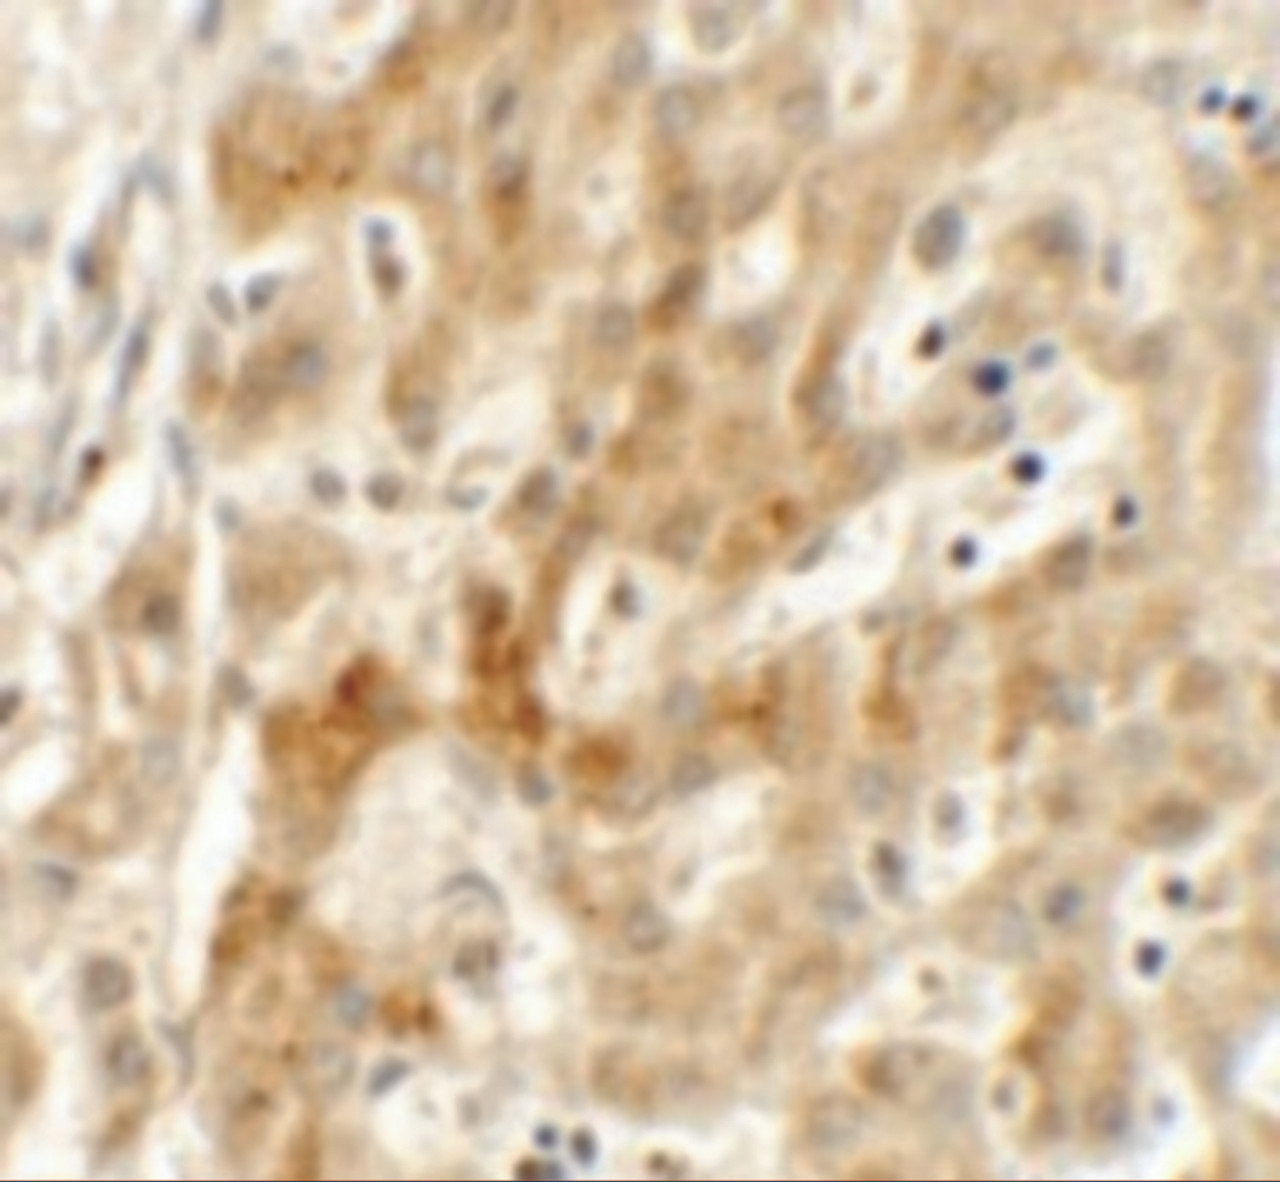 Immunohistochemistry of TMEM106B in human liver tissue with TMEM106B antibody at 2.5 ug/mL.